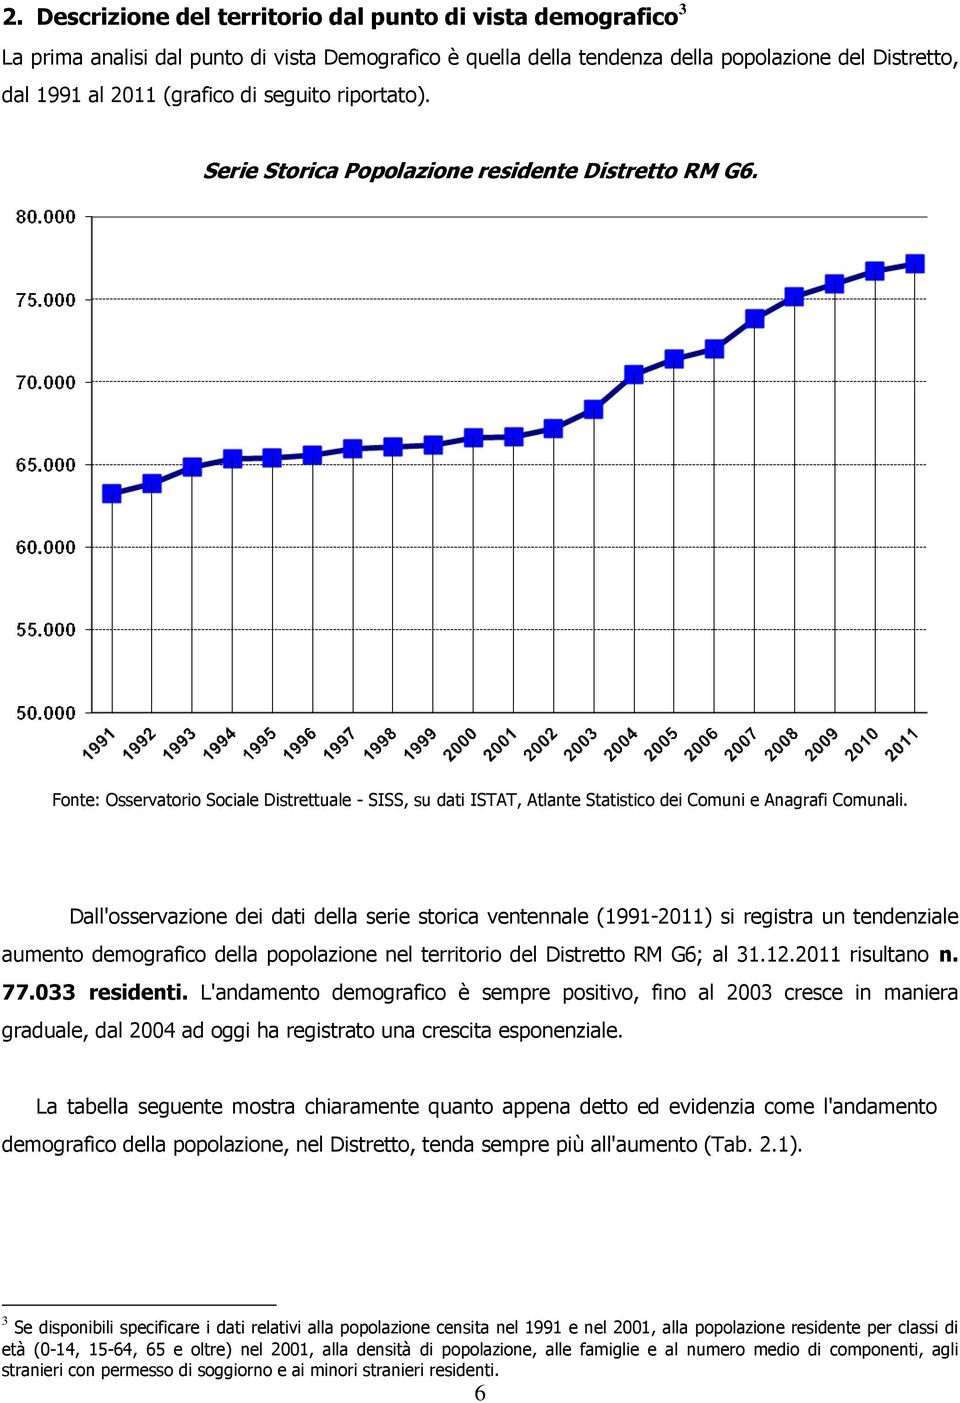 Dall'sservazine dei dati della serie strica ventennale (1991-2011) si registra un tendenziale aument demgrafic della pplazine nel territri del Distrett RM G6; al 31.12.2011 risultan n. 77.